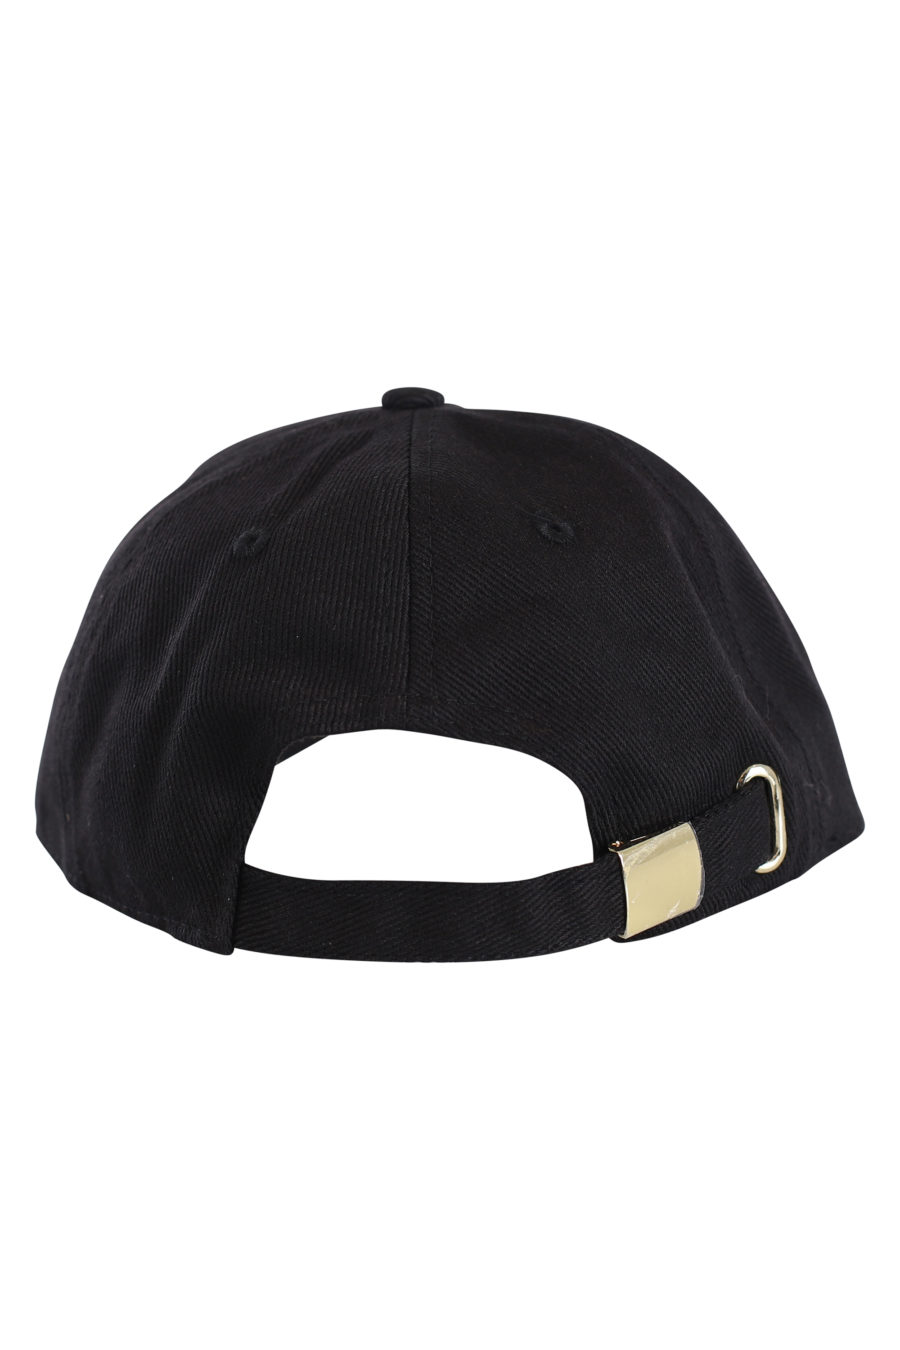 Gorra negra de pana con logo en "strass" - IMG 0160